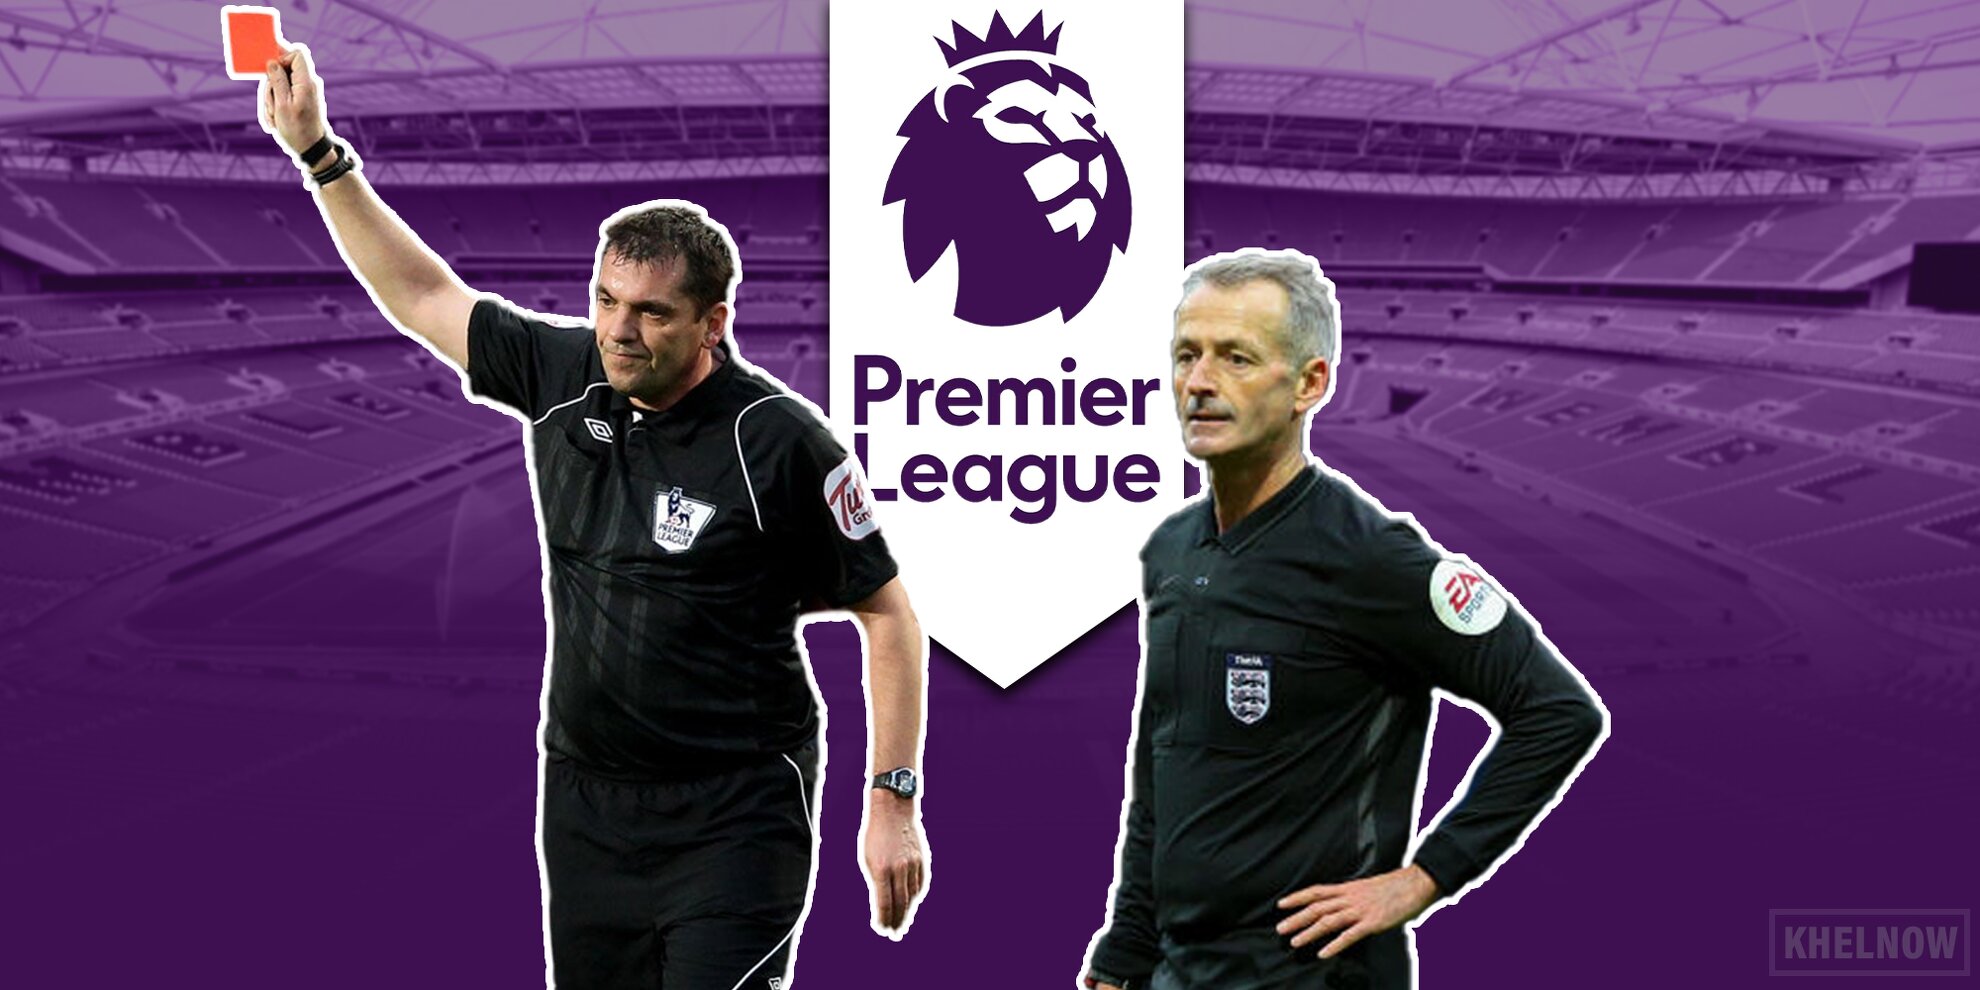 Premier League referees